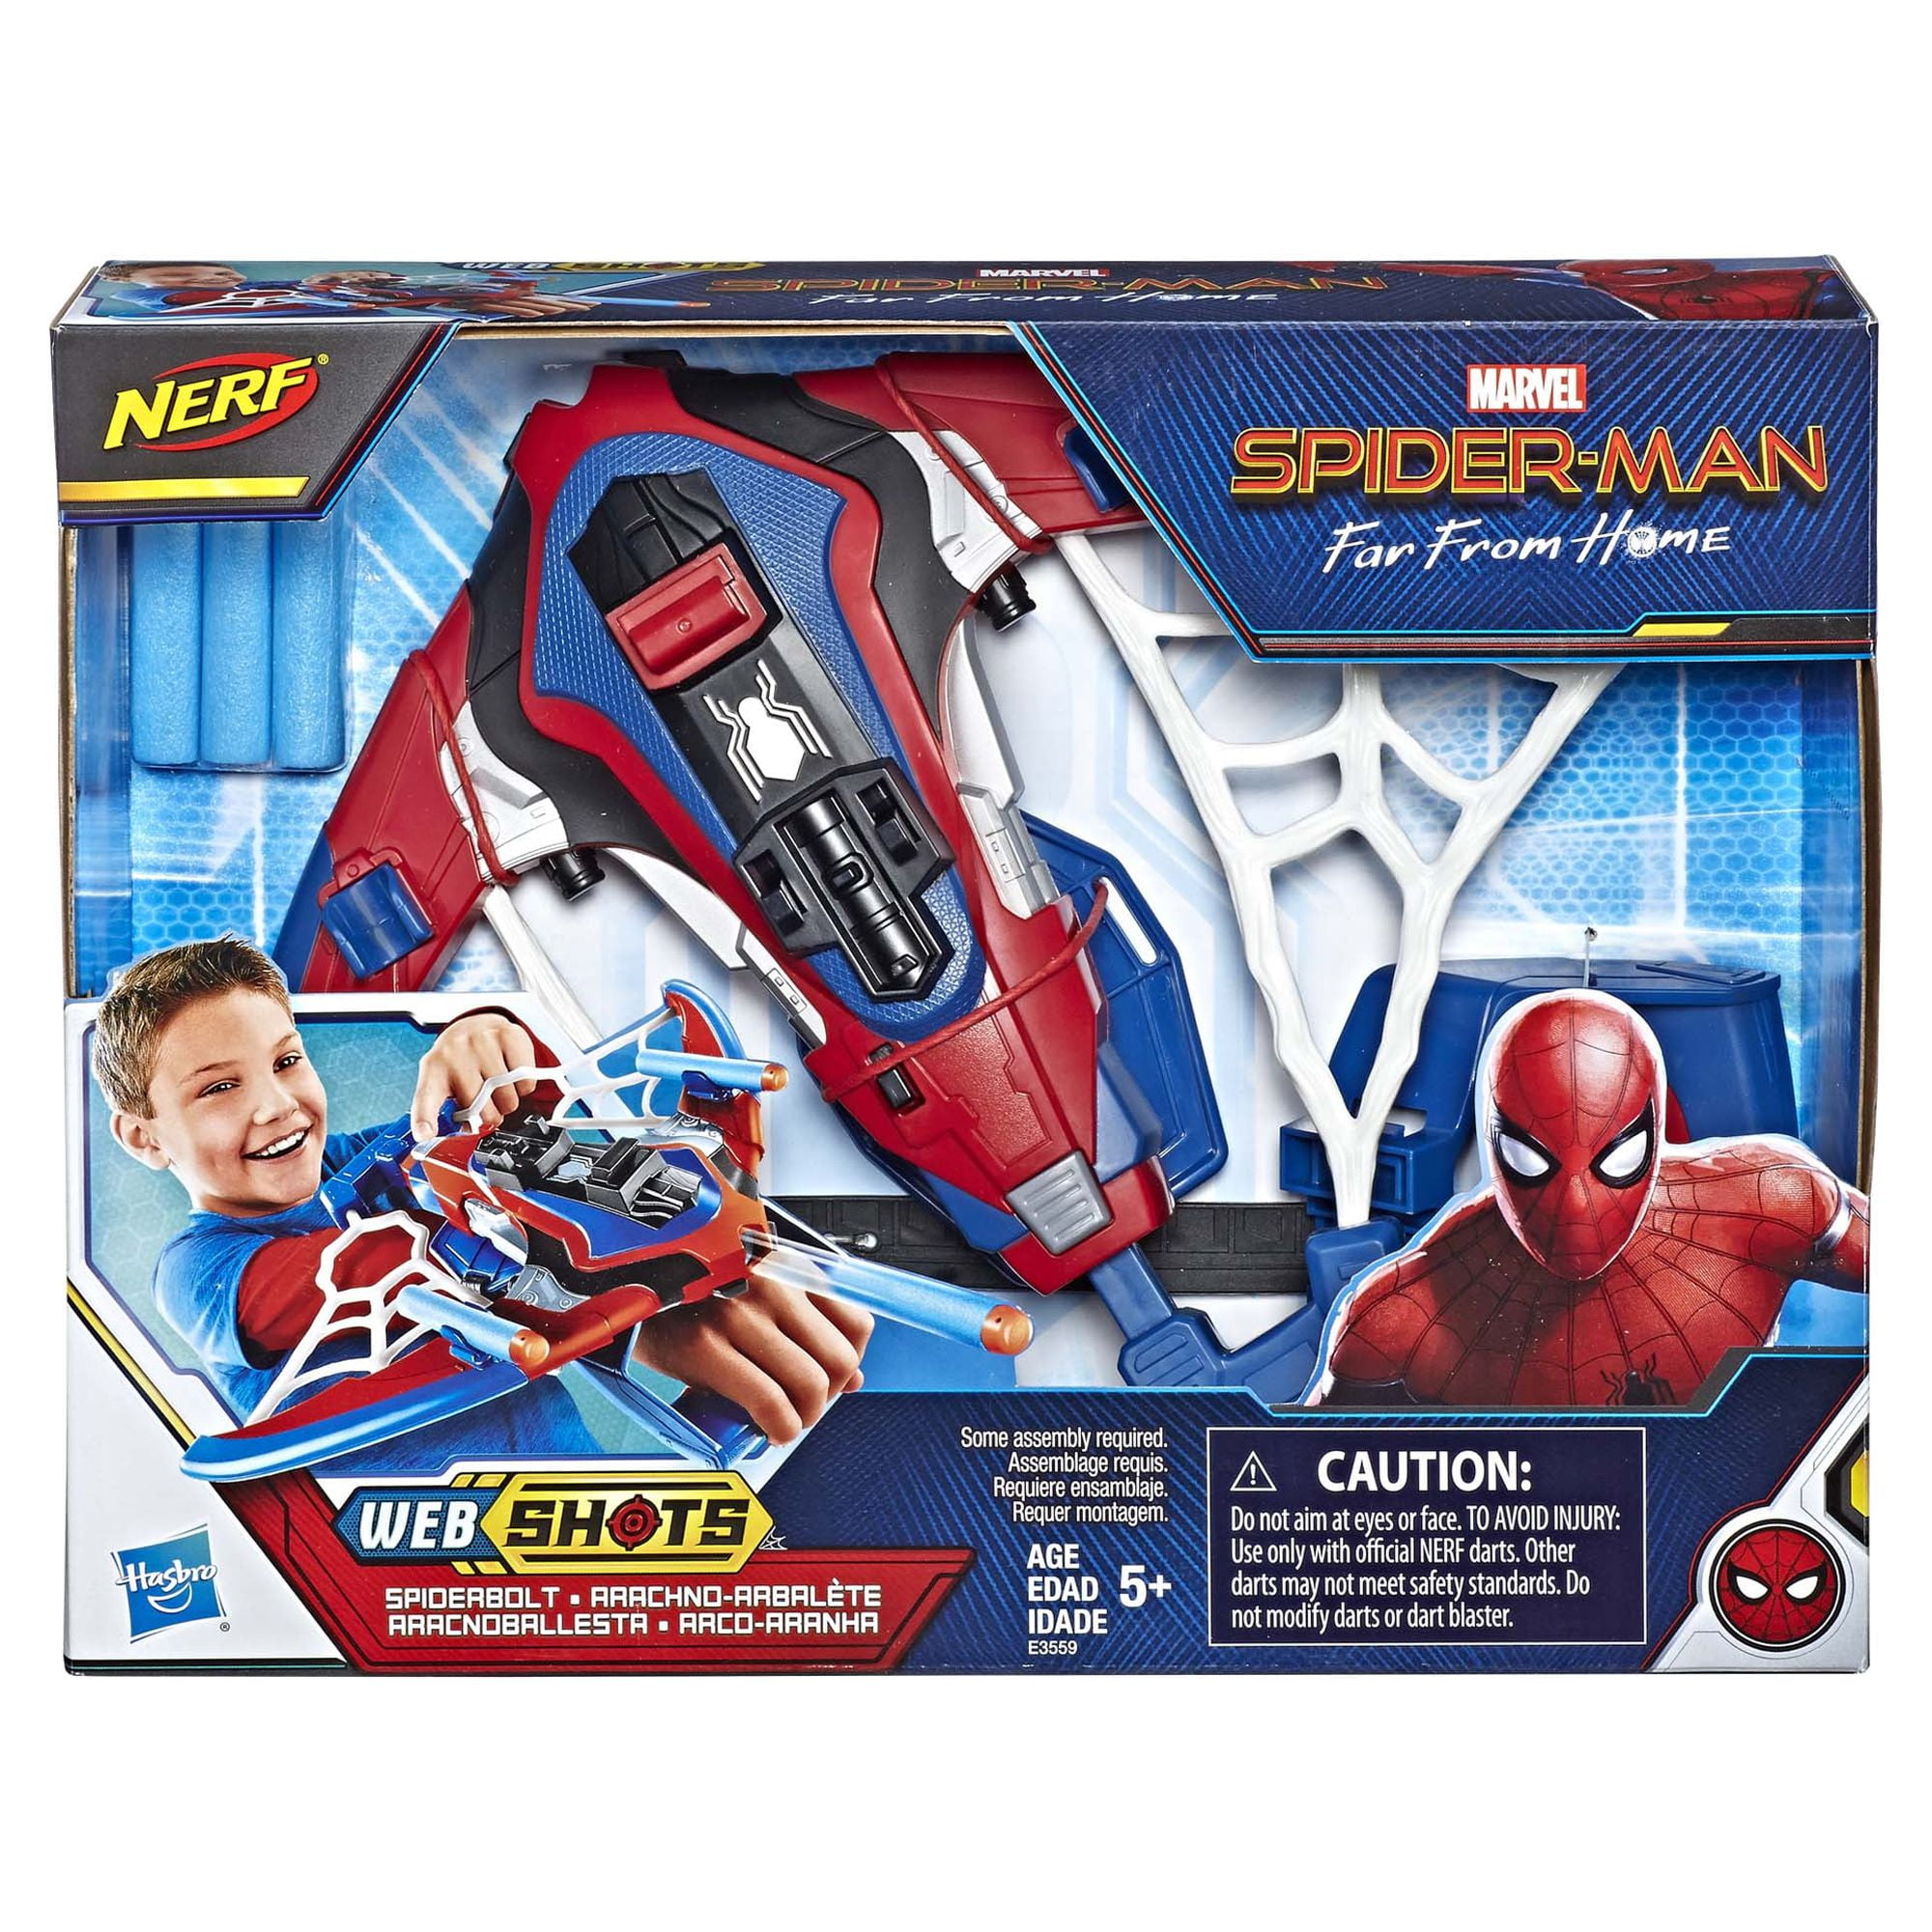 Spider-Man Web Shots Spiderbolt NERF Powered Blaster Toy